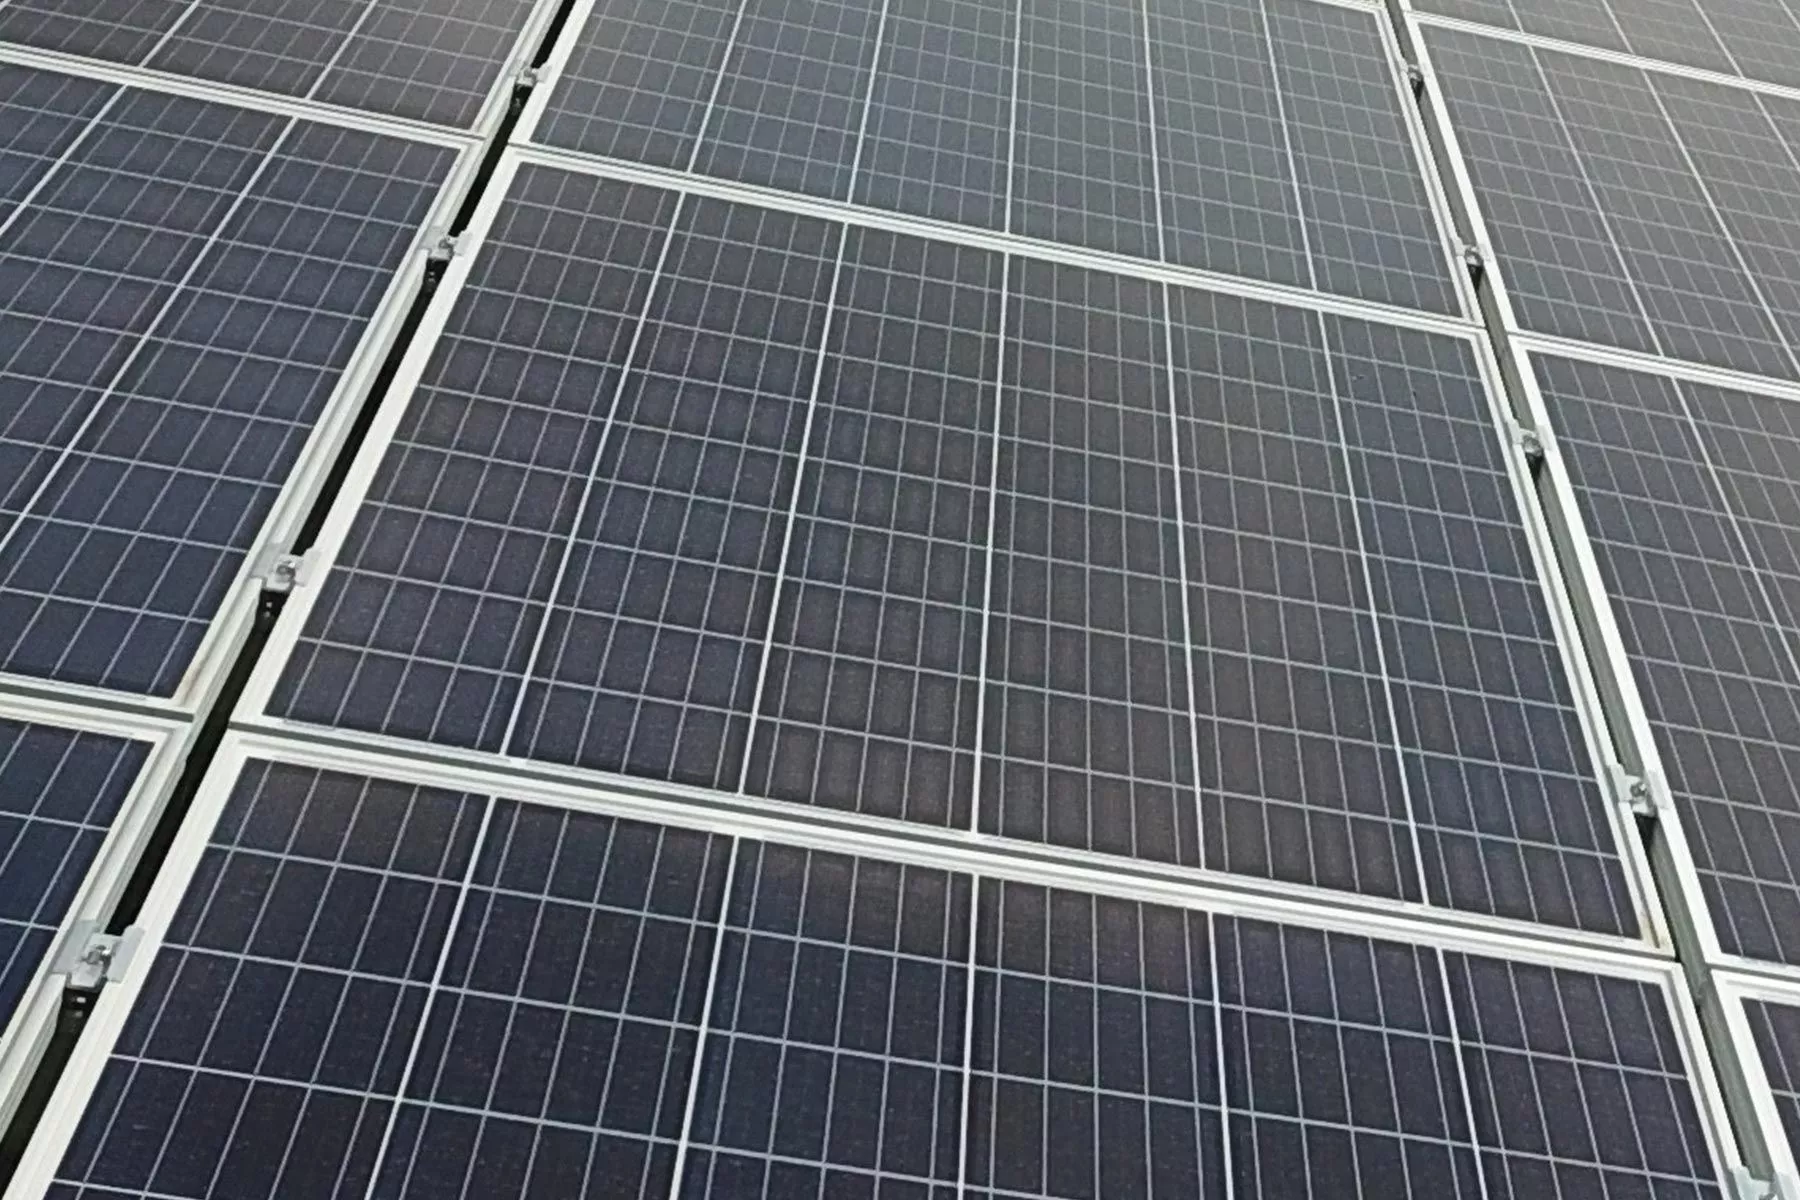 Le panneau solaire photovoltaïque : technologie et fonctionnement